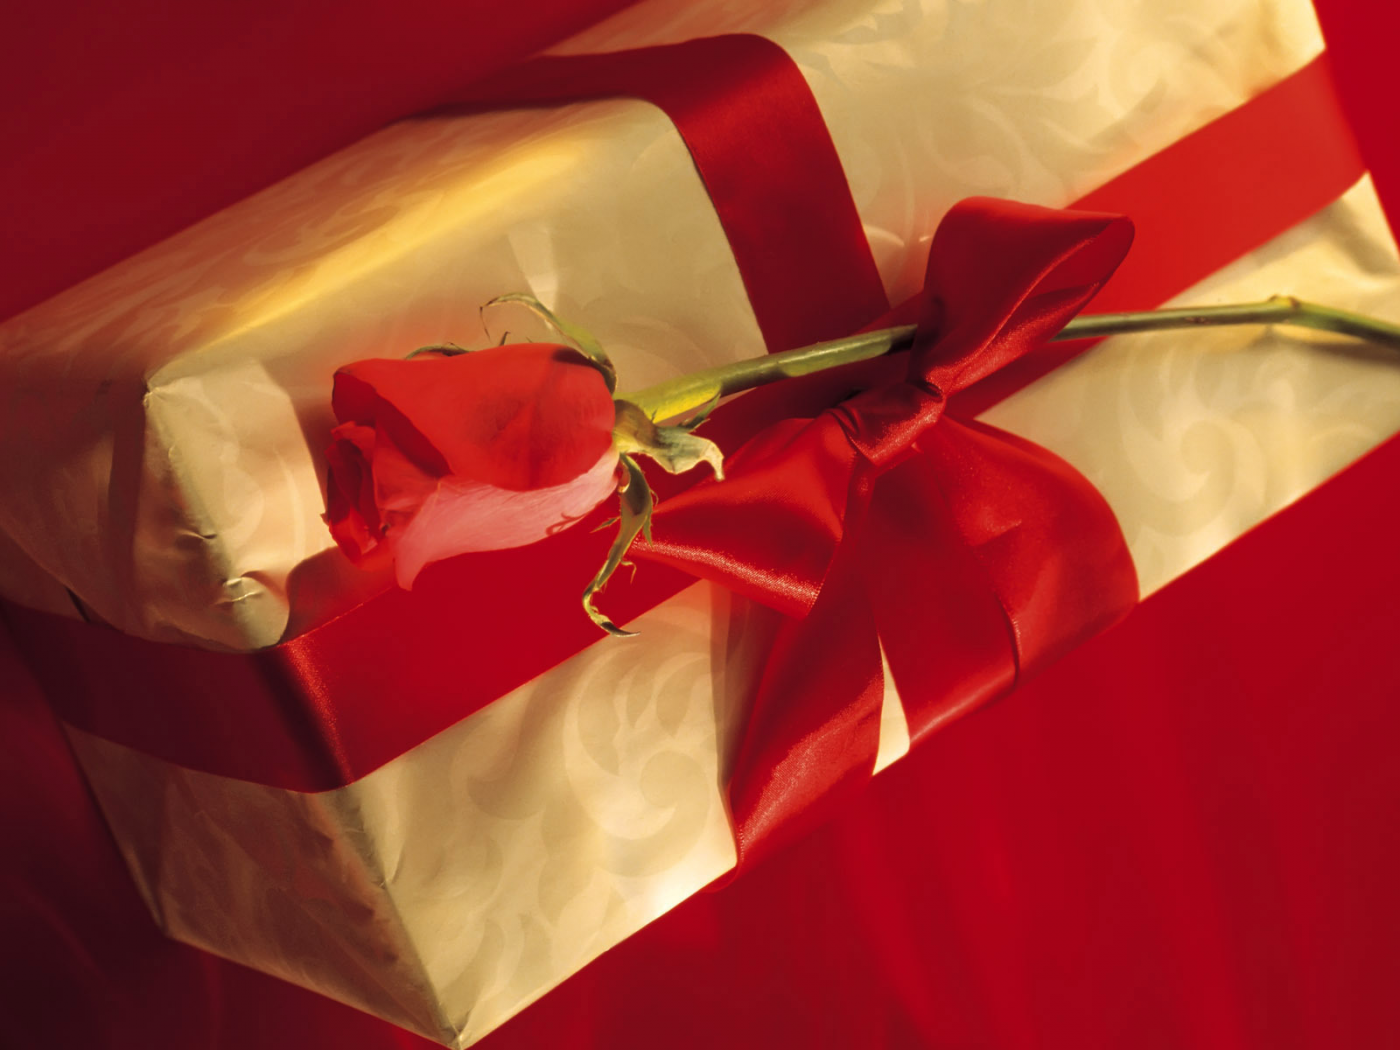 бантик, лента, цвет, цветок, праздник, красный, настроение, подарок, роза, сверток, упаковка, коробка